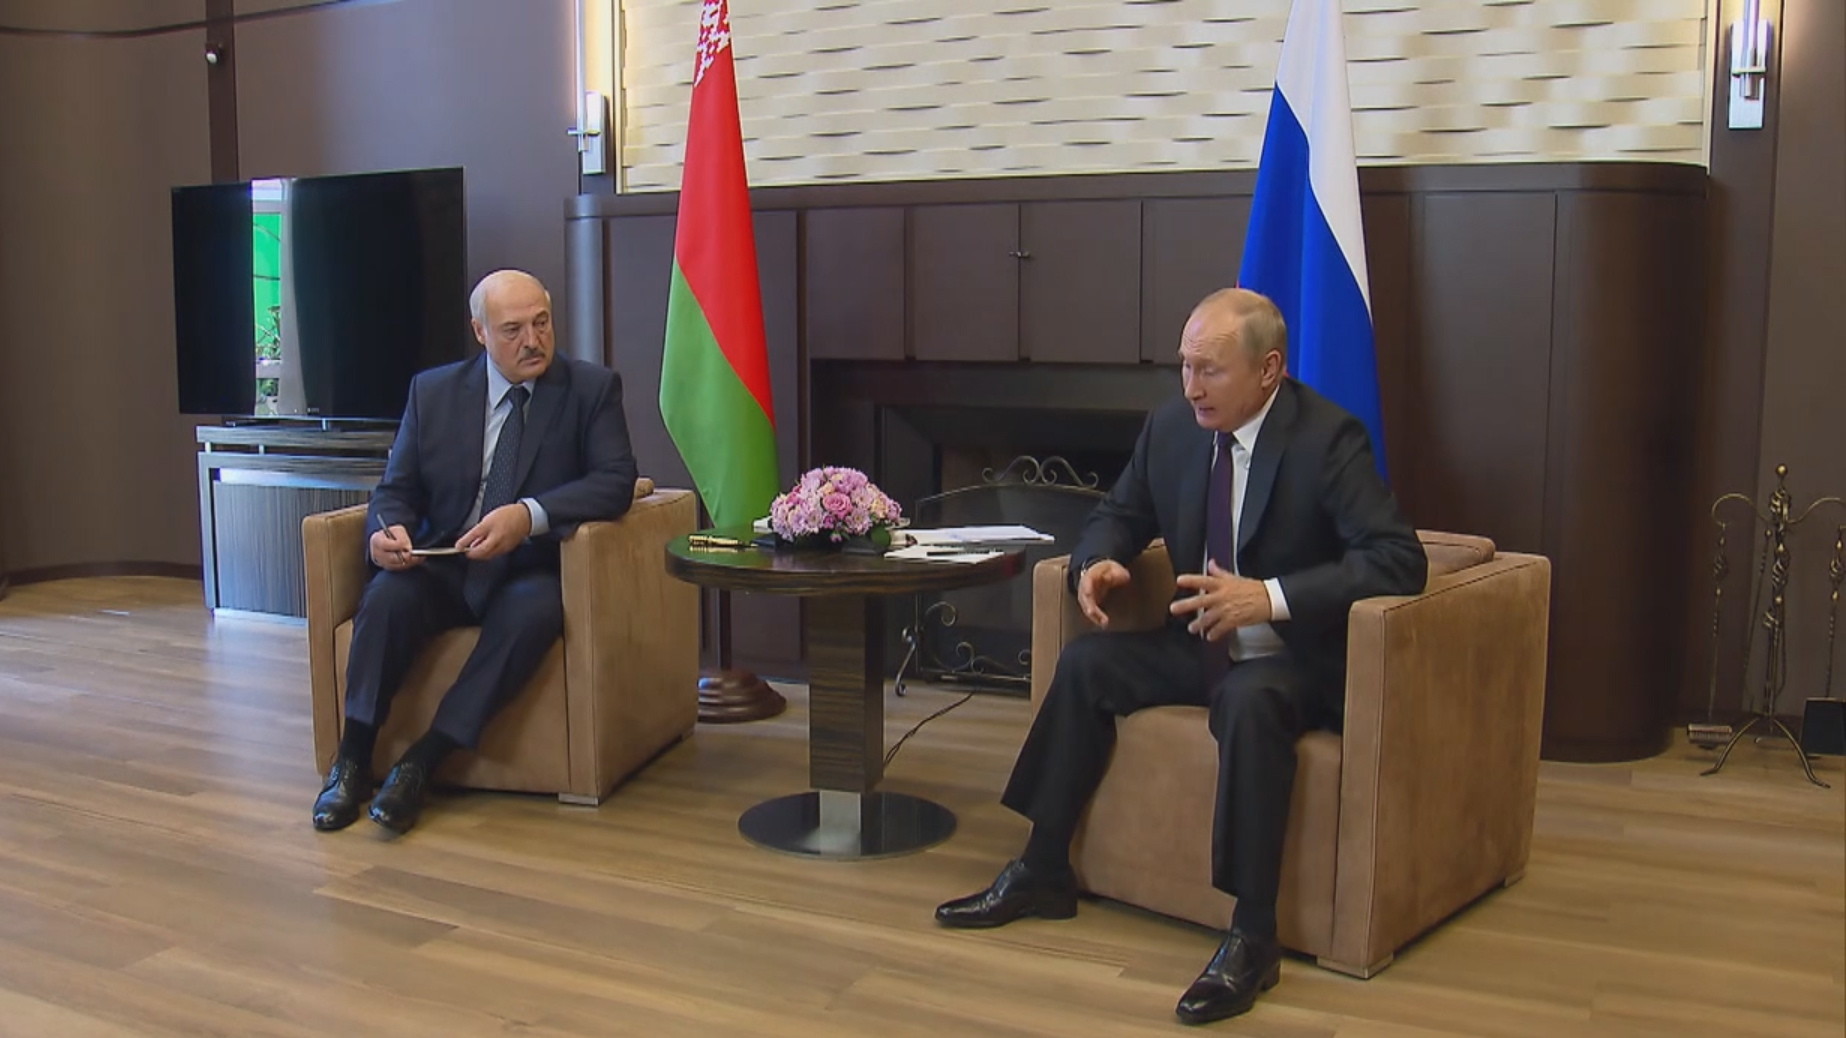 Kreml tłumaczy kredyt dla Mińska. "To nie jest ingerencja w sprawy Białorusi"